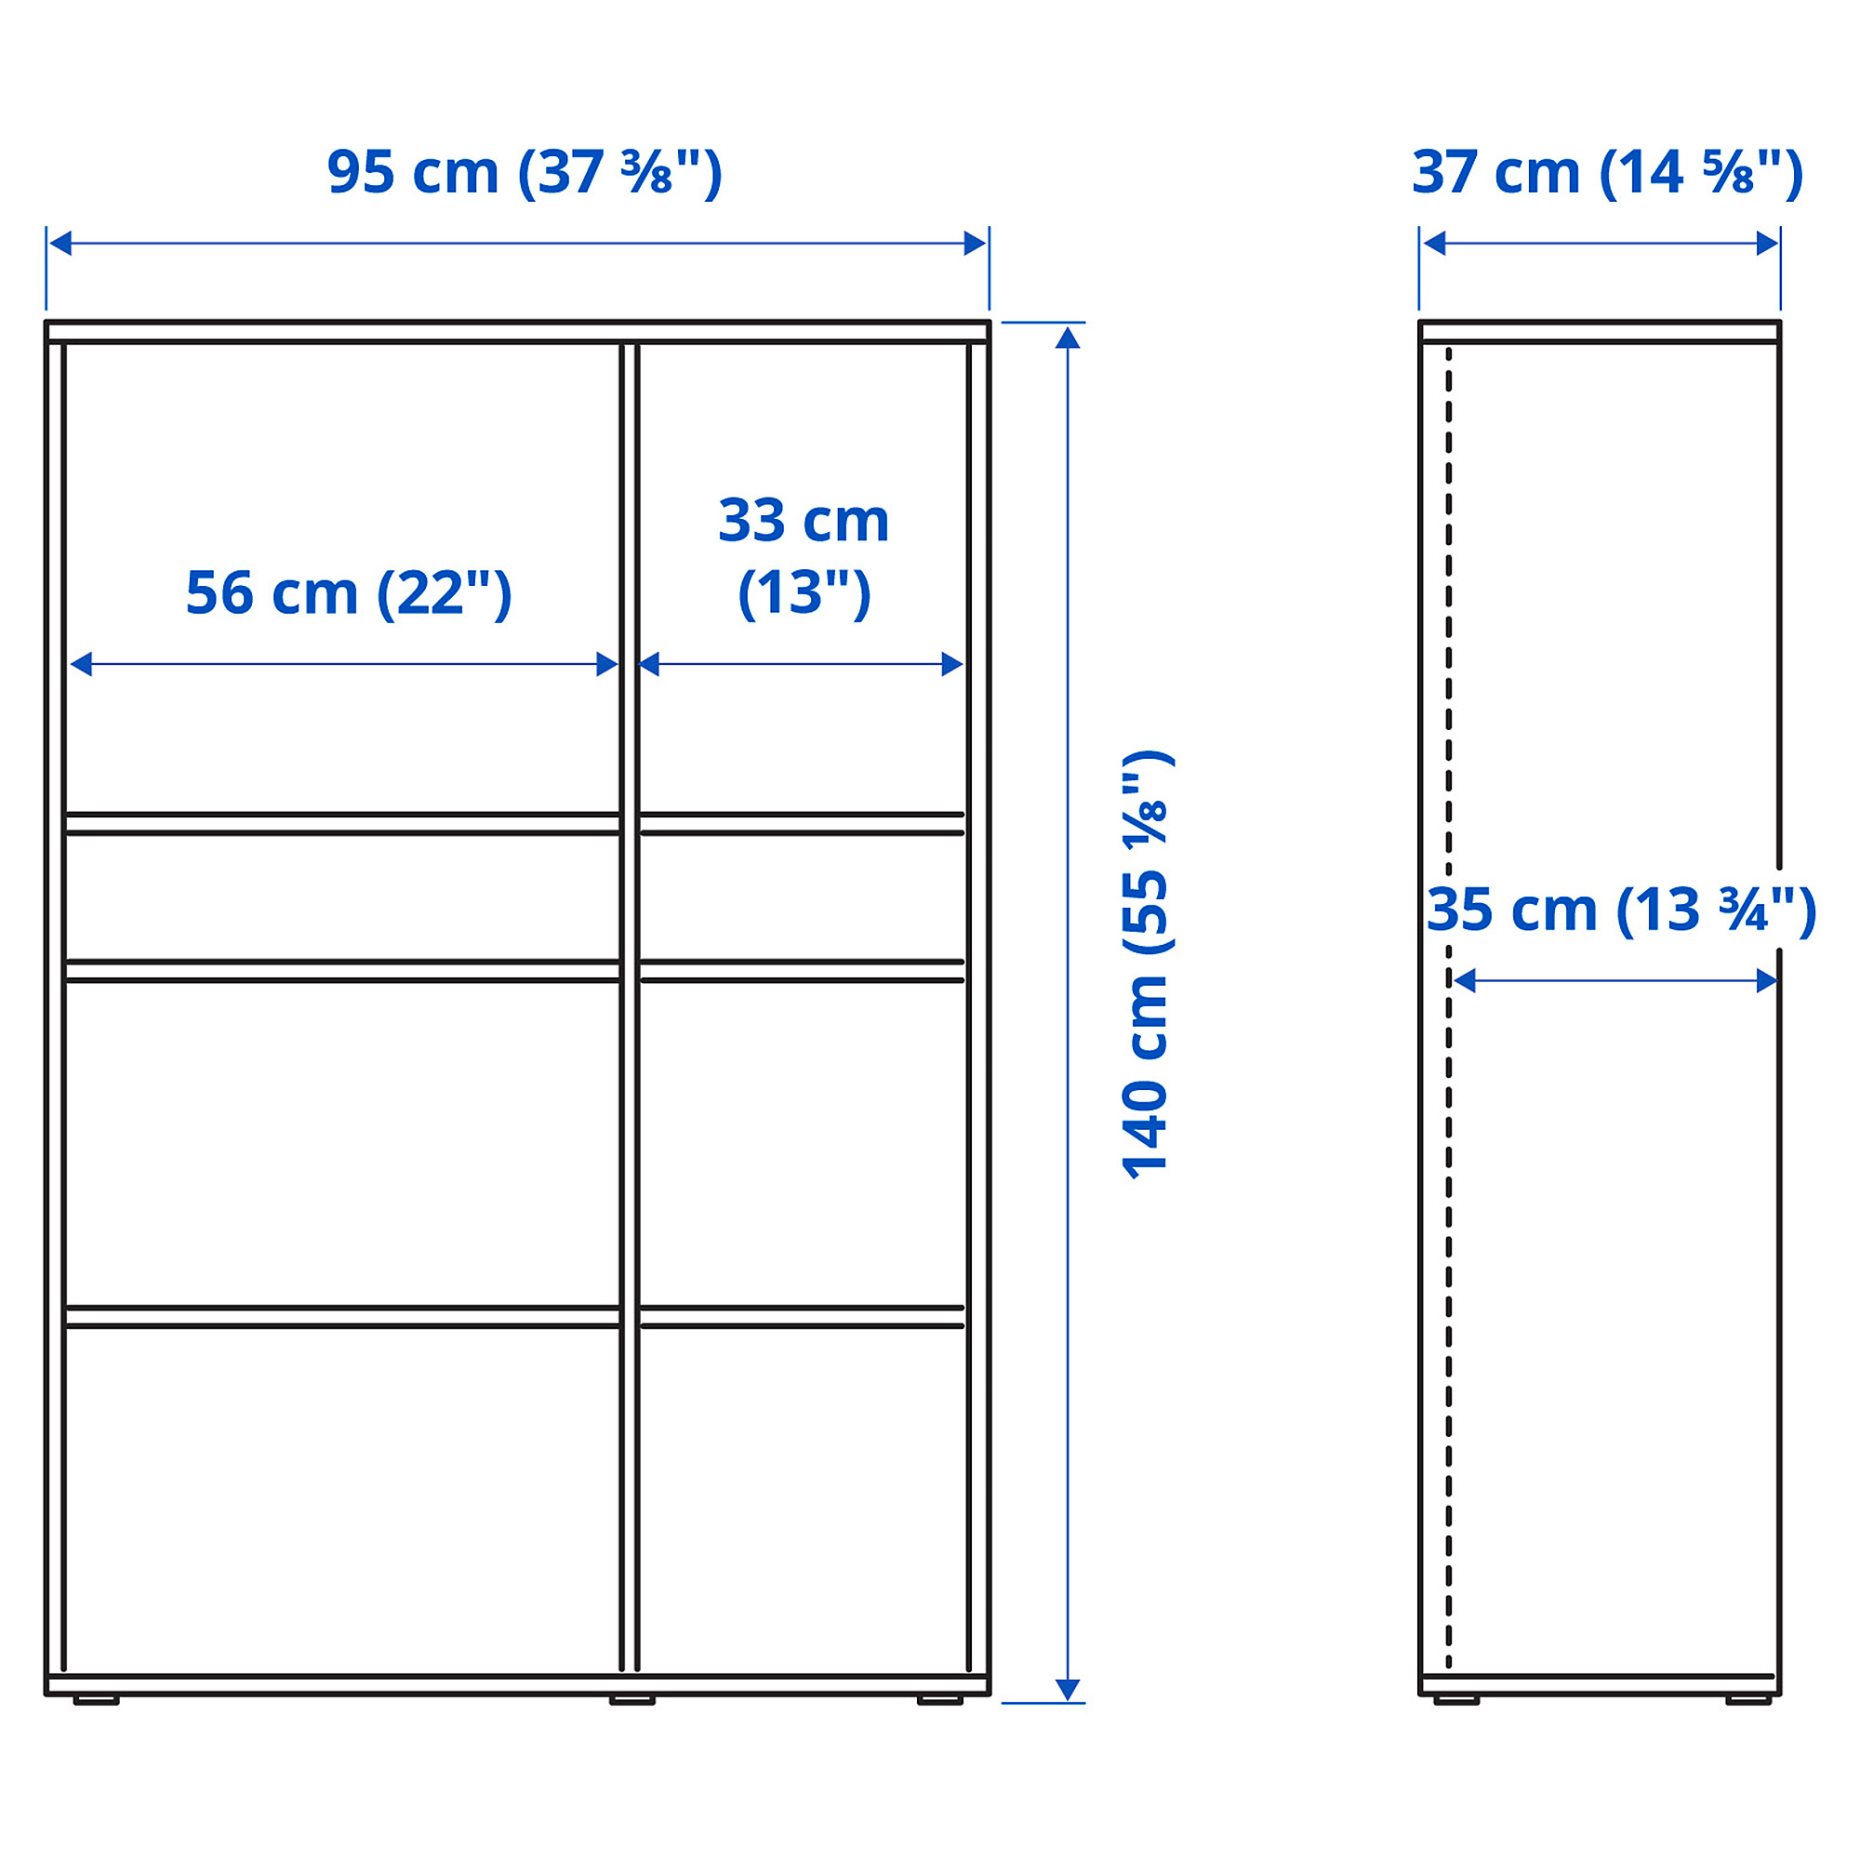 VIHALS, shelving unit with 6 shelves, 95x37x140 cm, 805.429.18